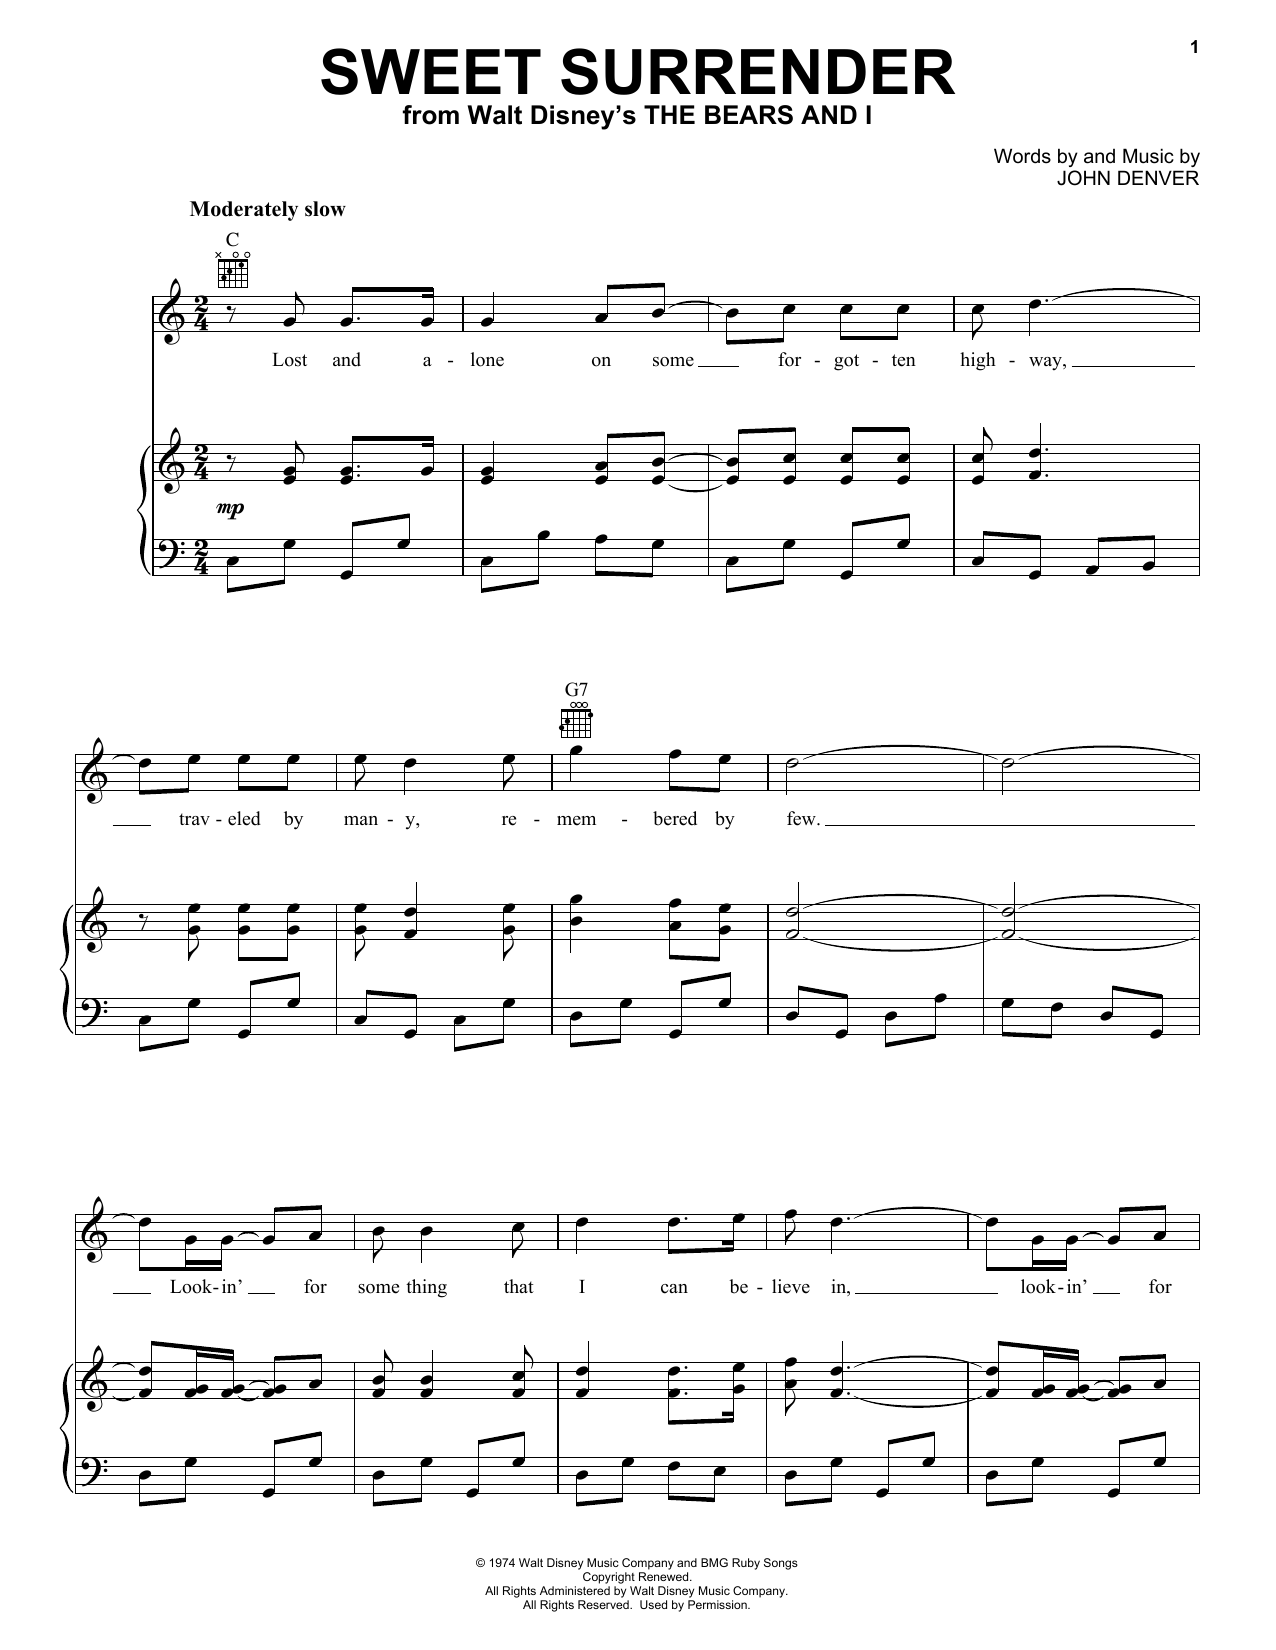 John Denver Sweet Surrender Sheet Music Notes & Chords for Viola - Download or Print PDF